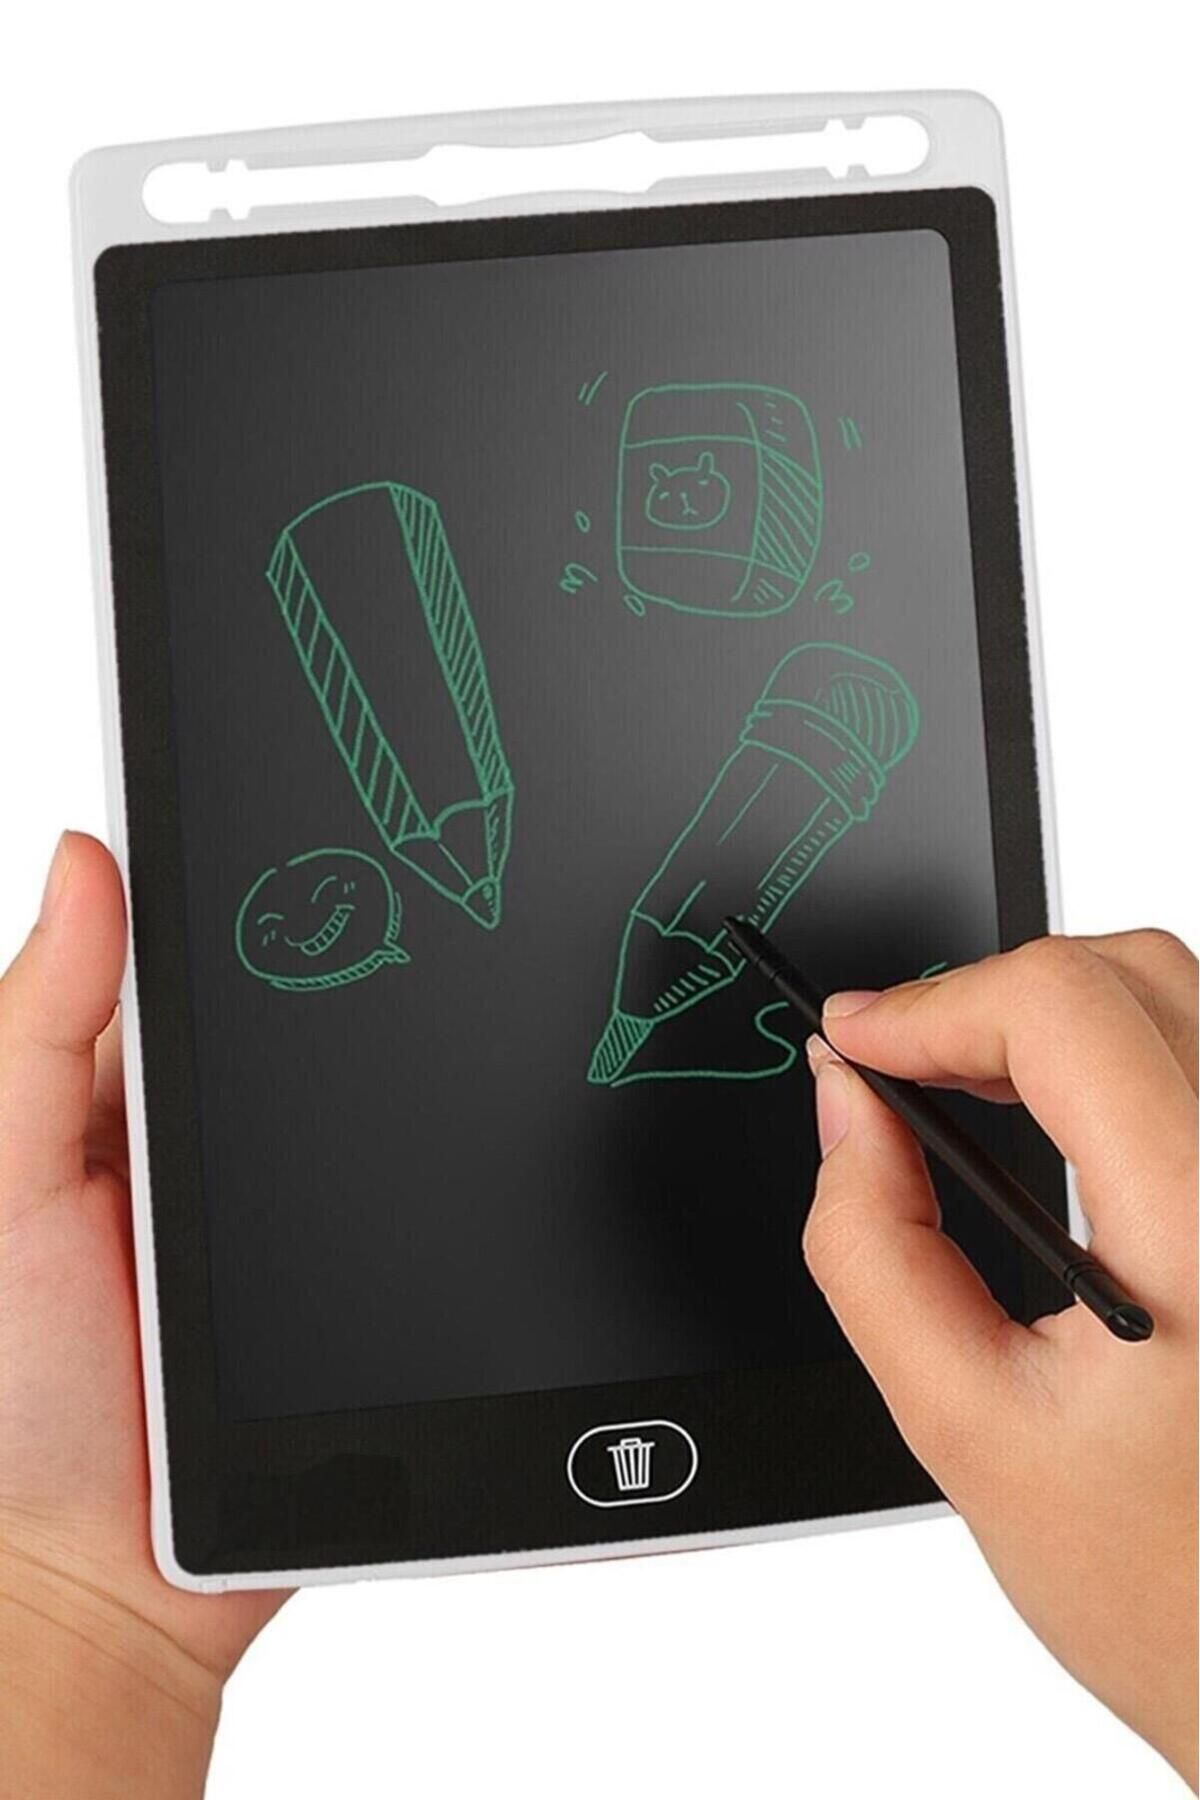 Jetcom Lcd Tablet 8,5 Inç Writing Tablet Çizim Yazı Yazma Eğitim Tahtası Boyama Çizim Alıştırma Hesap Beyaz